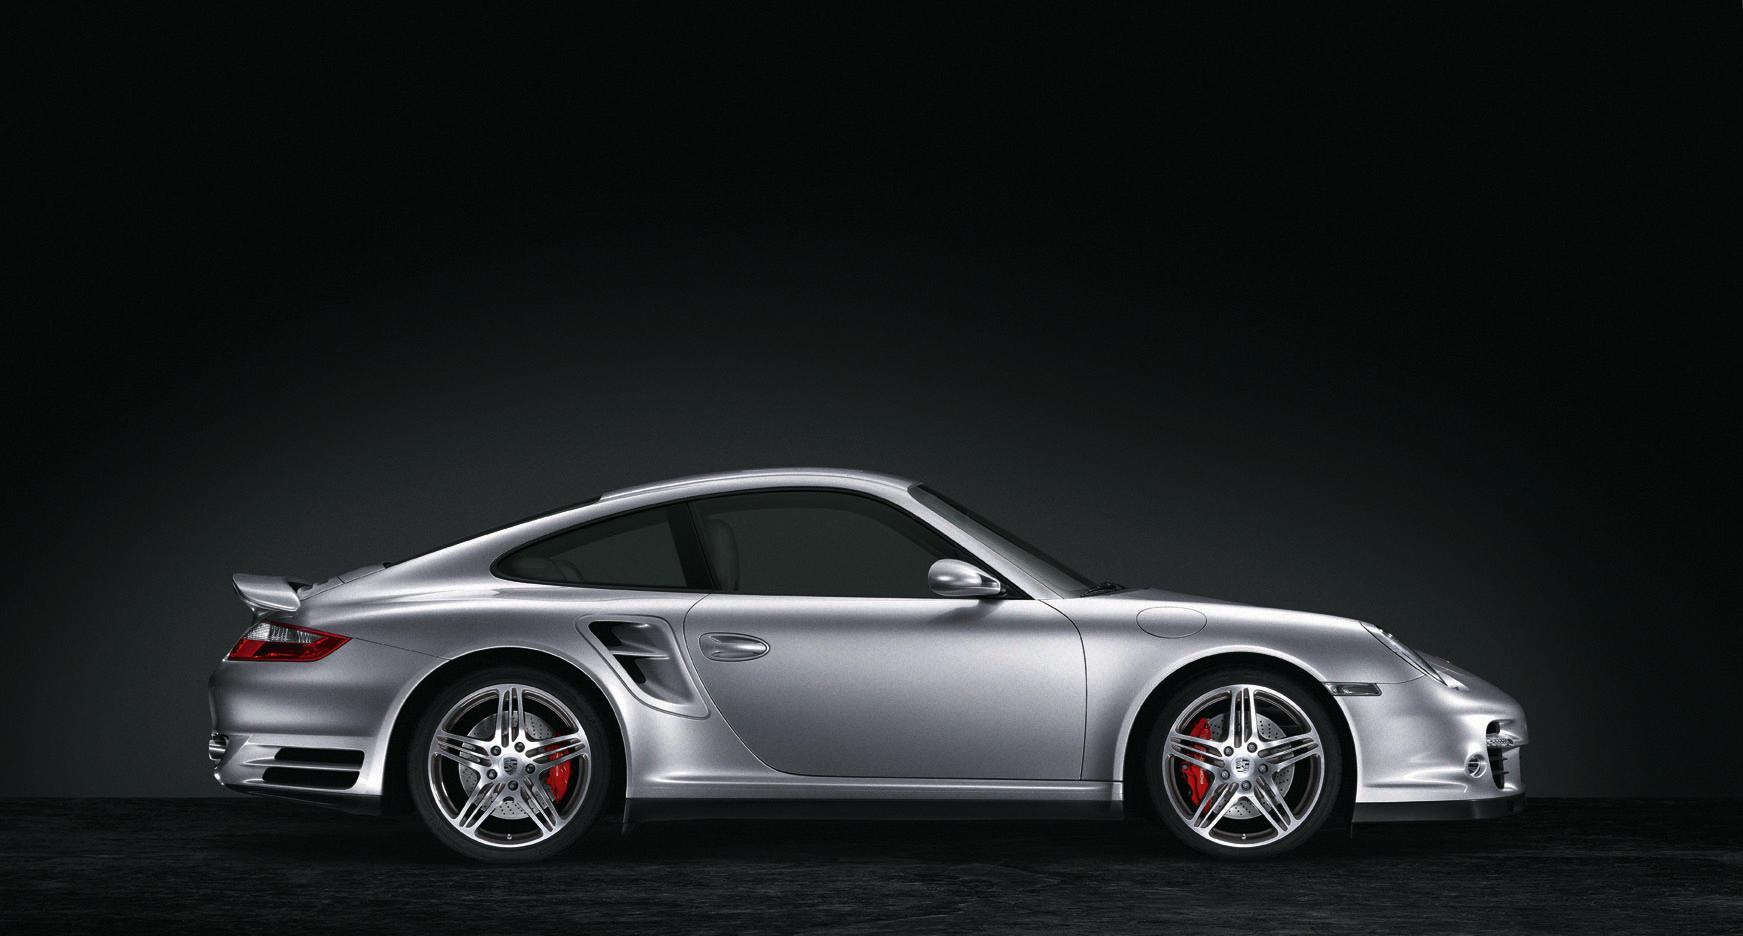 Detailed Model Description About The Porsche 911 Turbo - 2006 Porsche 911 Turbo , HD Wallpaper & Backgrounds